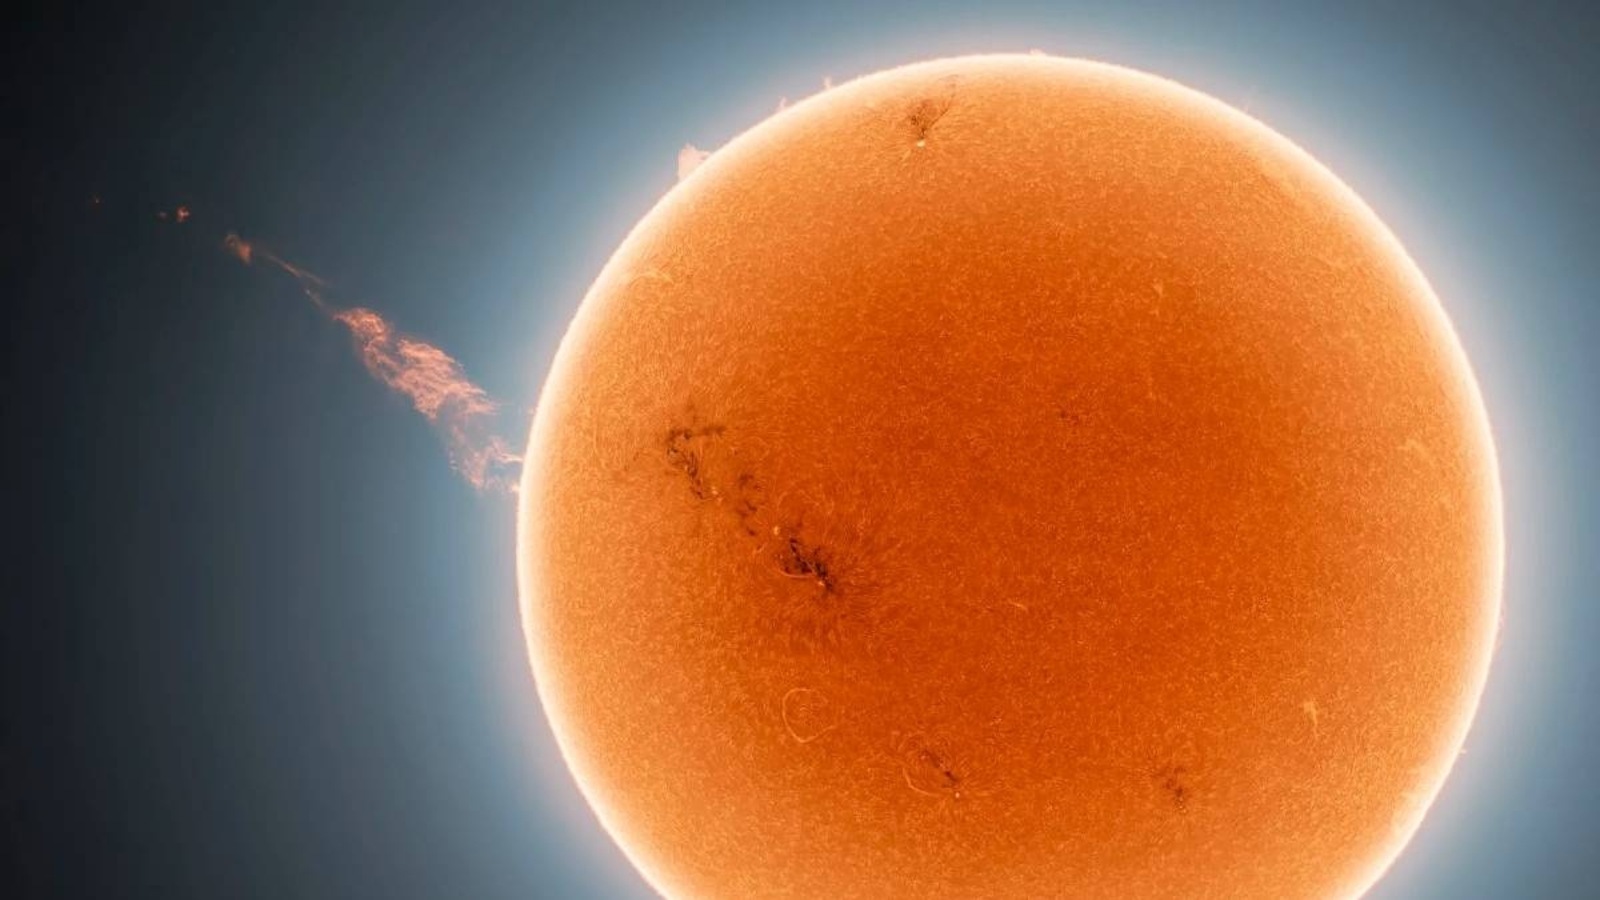 ¡Guau!  El sol dispara una columna de plasma de 1,6 millones de millas, el astrónomo obtiene una foto increíble